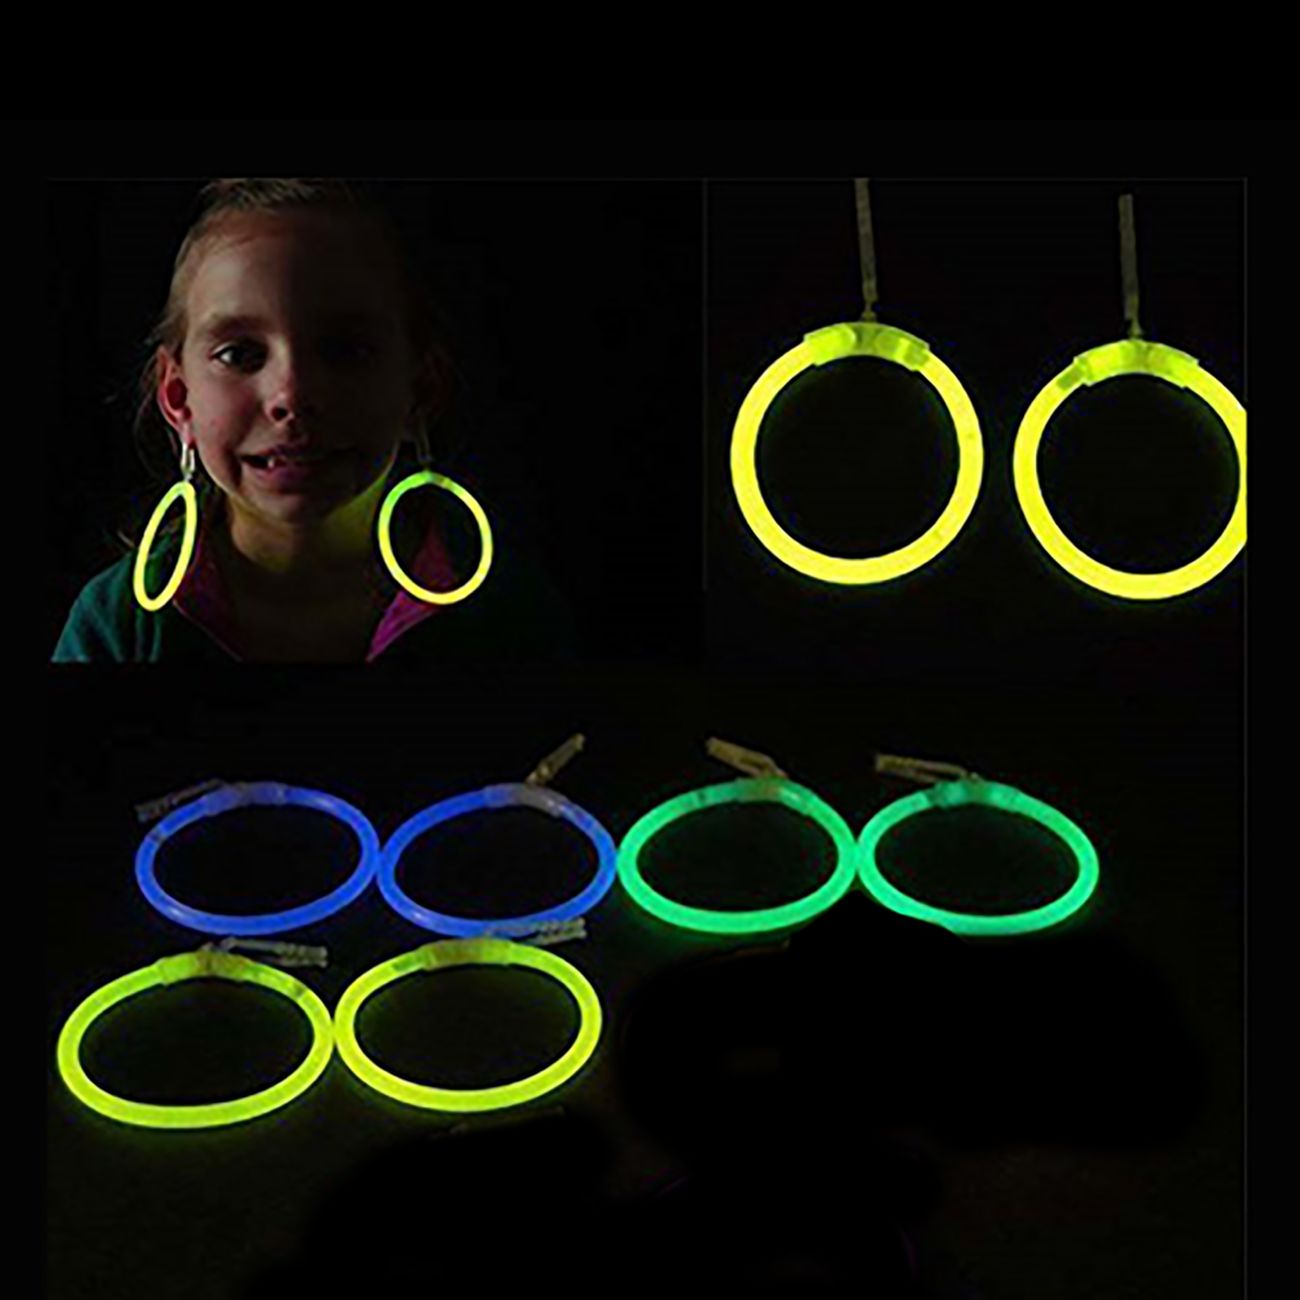 glow-earrings-11394-17